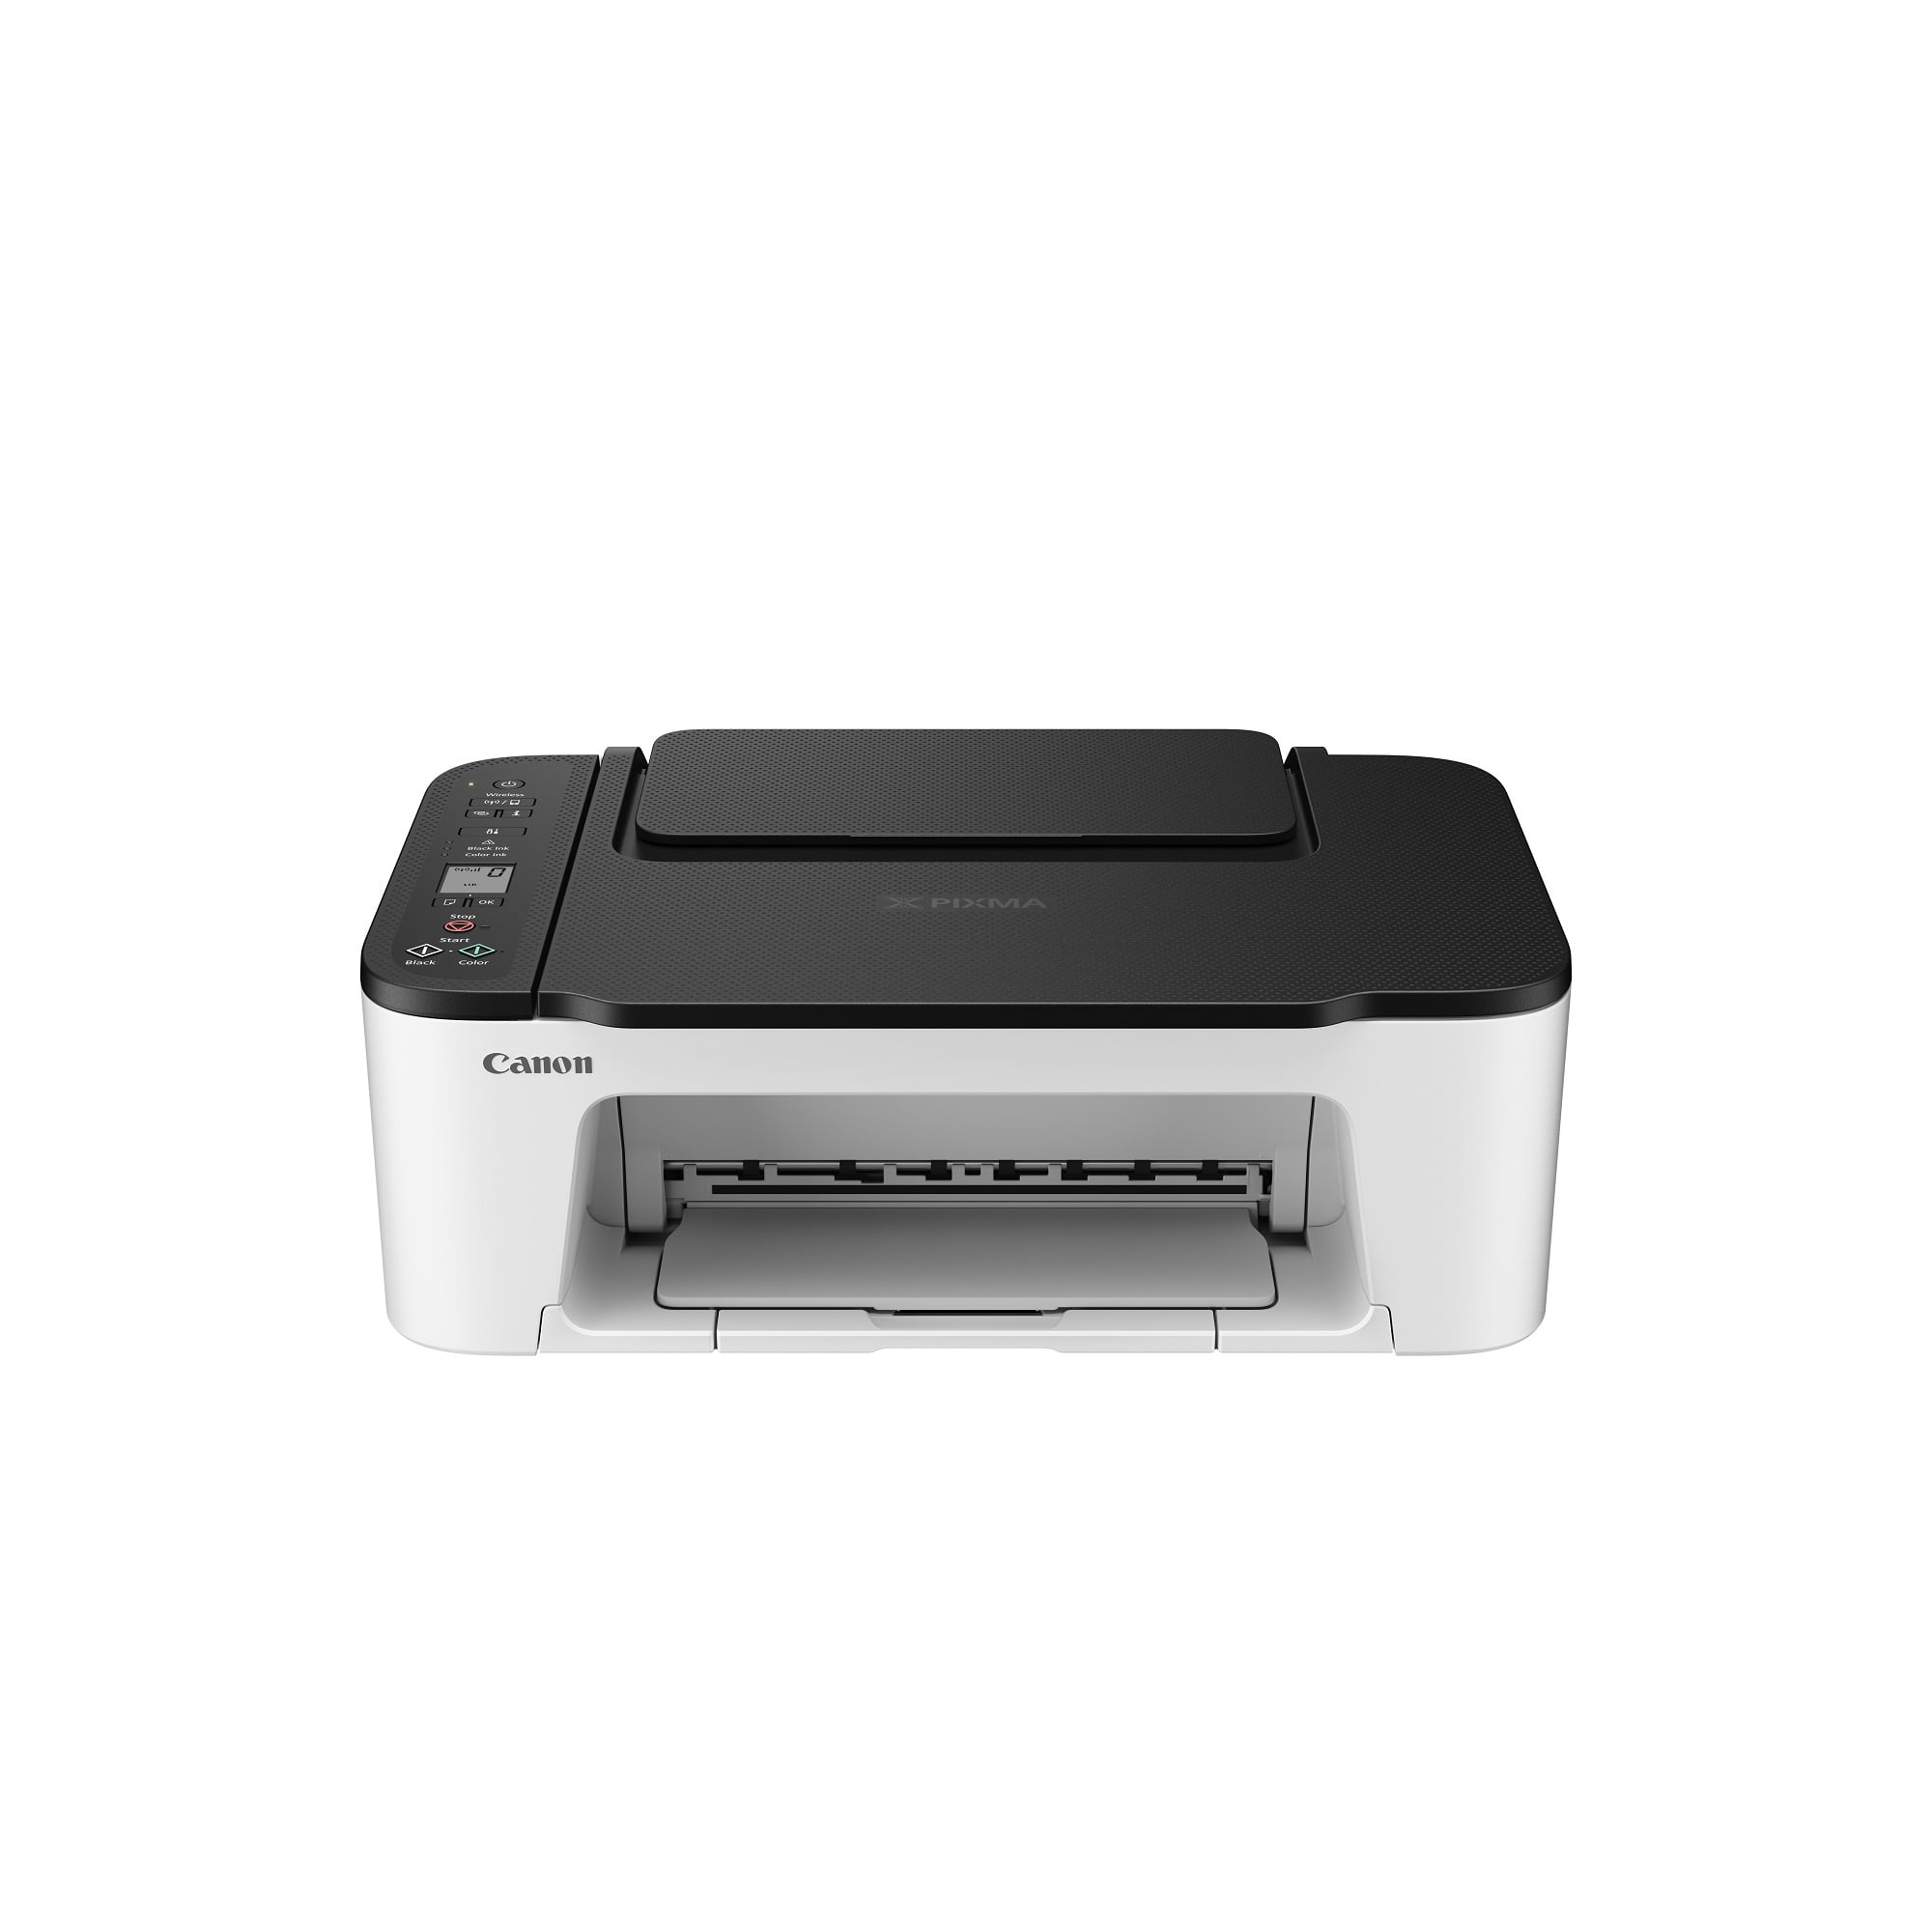 Geboorte geven Verandert in wervelkolom Canon PIXMA TS3522 All-in-One Wireless InkJet Printer with Print, Copy and  Scan Features - Walmart.com